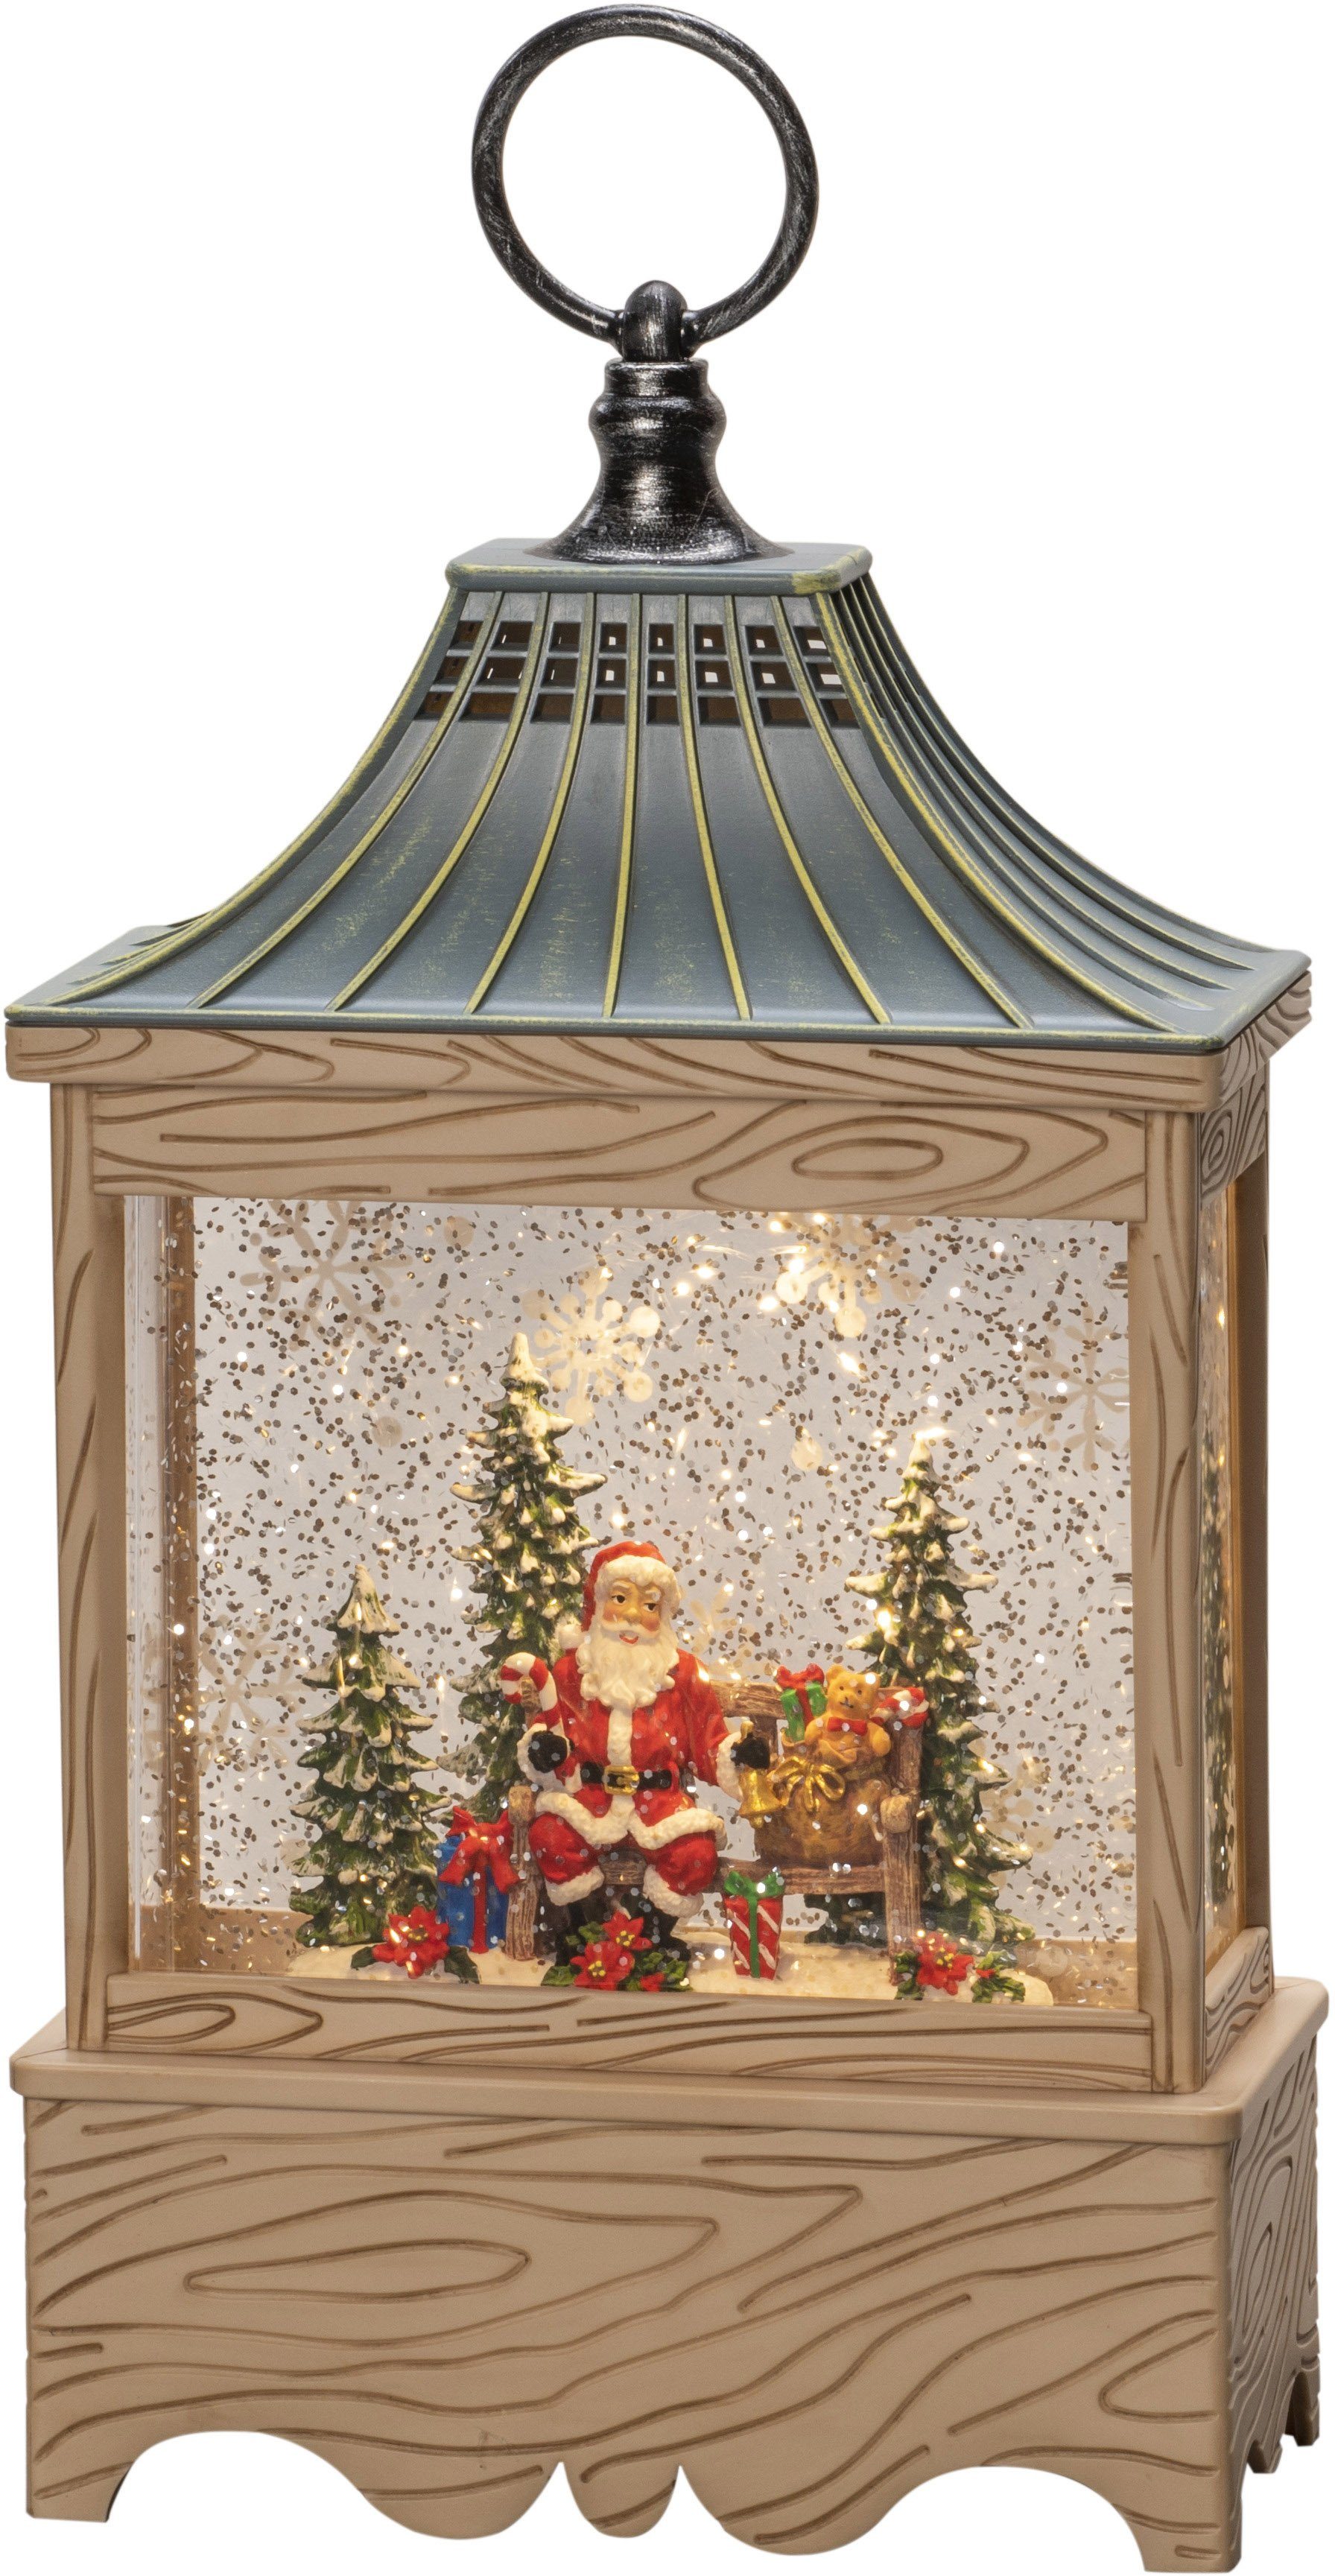 KONSTSMIDE LED Laterne Wasserlaterne Santa integriert, weiße Baum, 5h warm wassergefüllt, Weihnachtsdeko, und LED fest Diode Warmweiß, 1 naturfarben, Timer